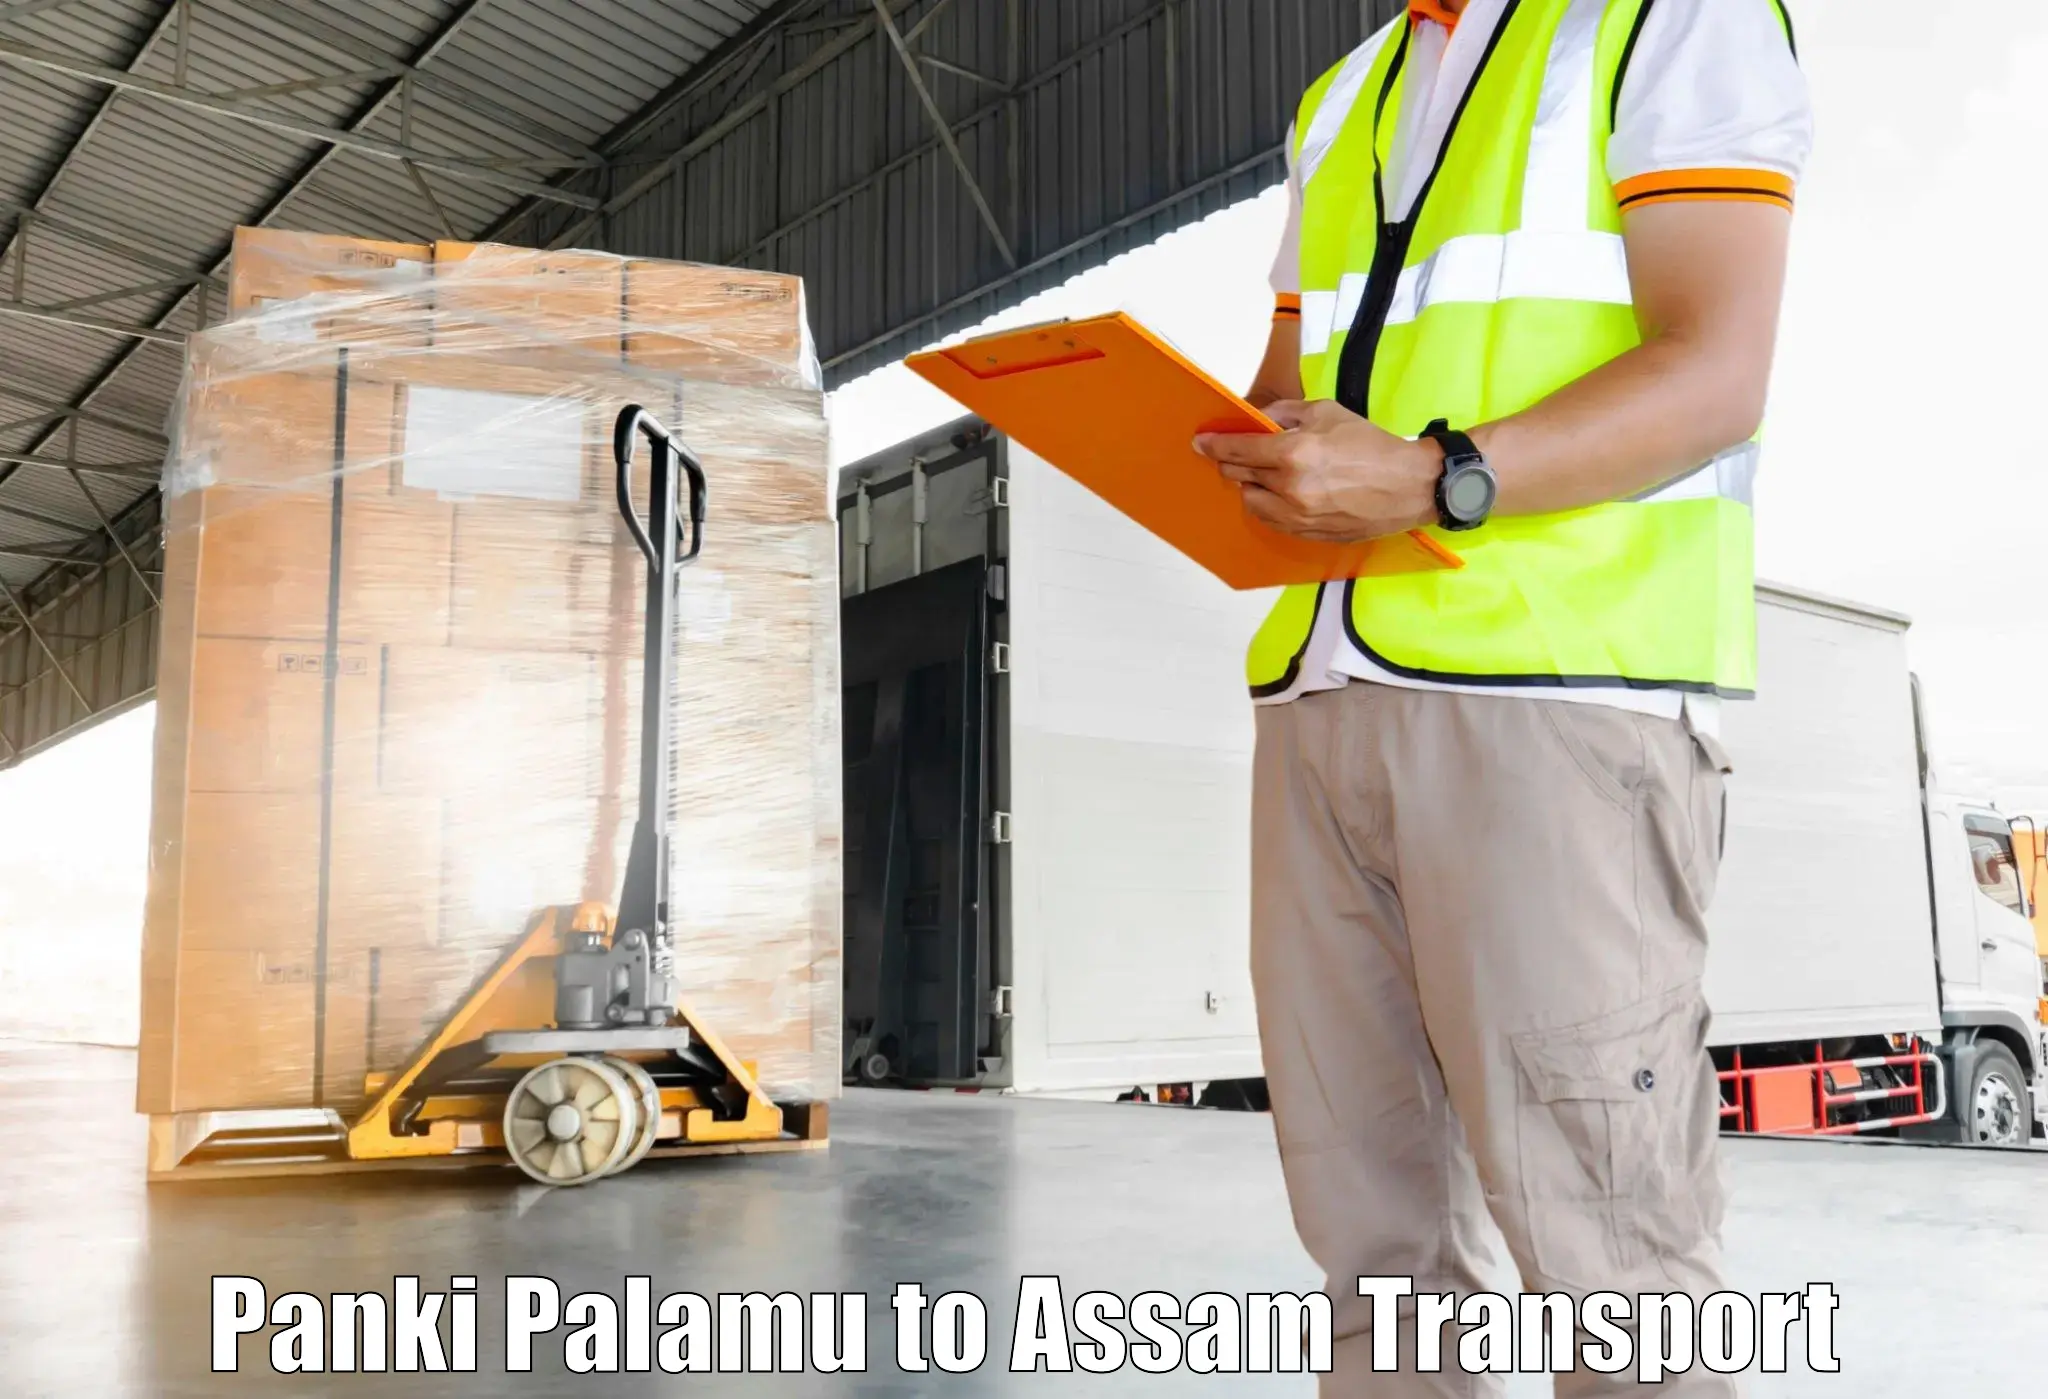 Online transport service Panki Palamu to Tihu